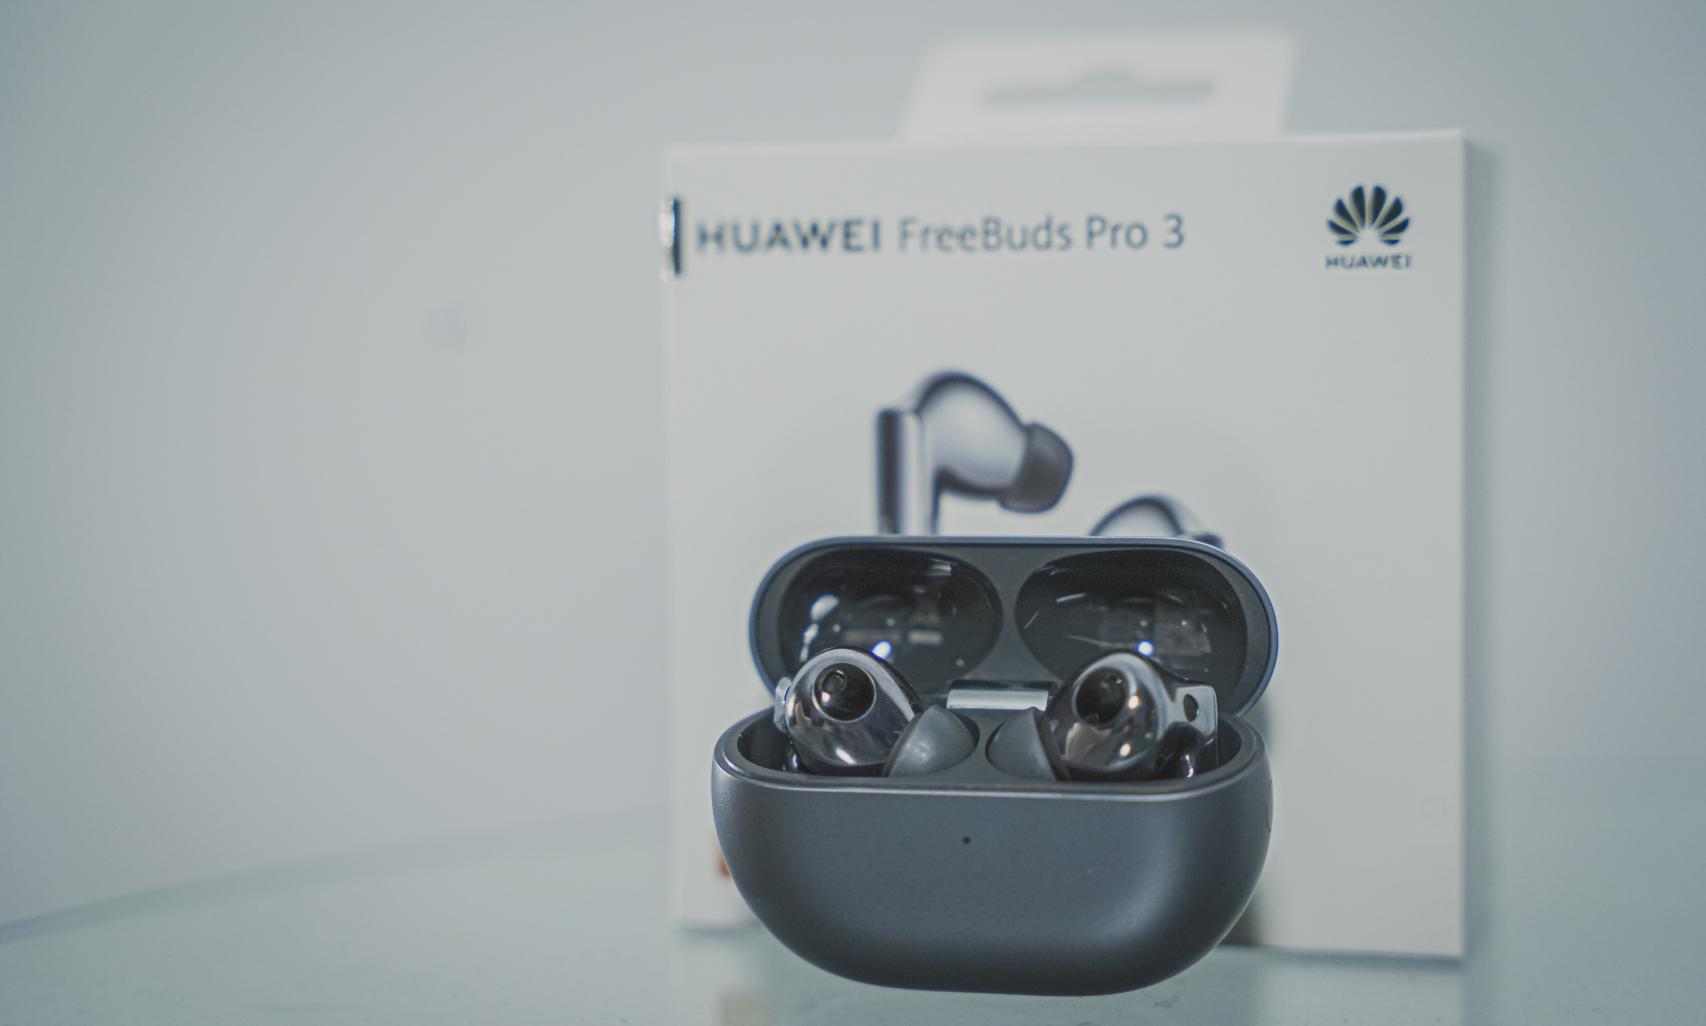 Fabricar silencio para potenciar la música: así son los Huawei FreeBuds Pro  3